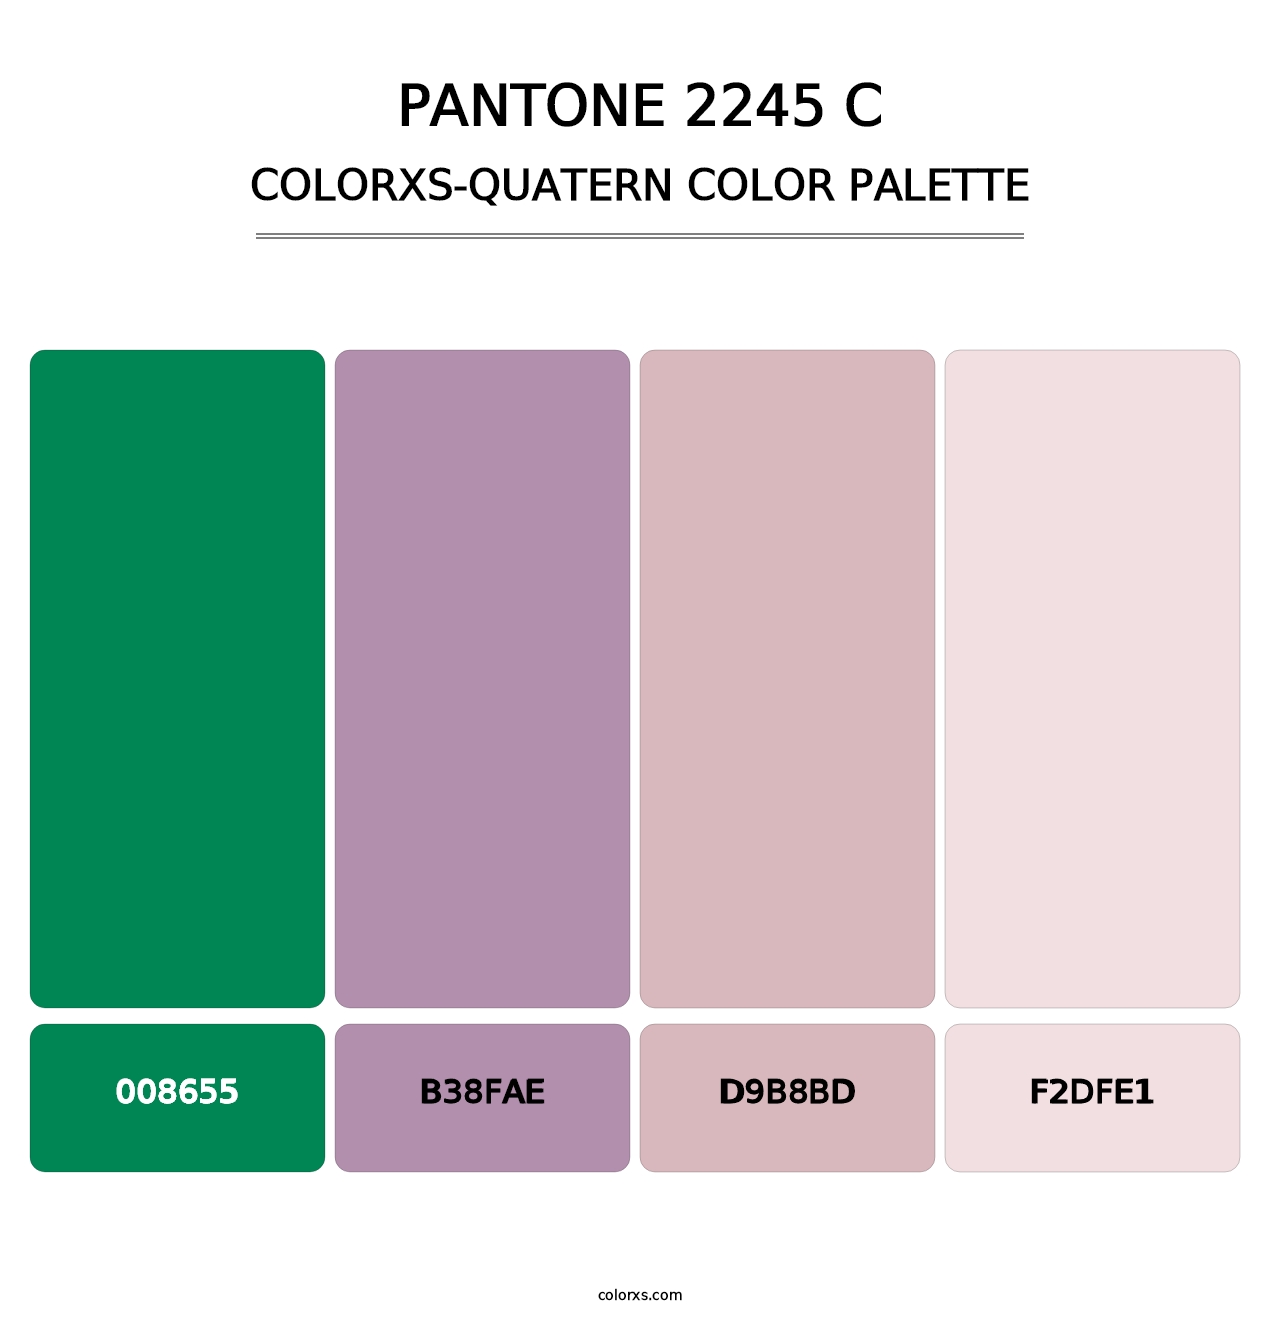 PANTONE 2245 C - Colorxs Quatern Palette